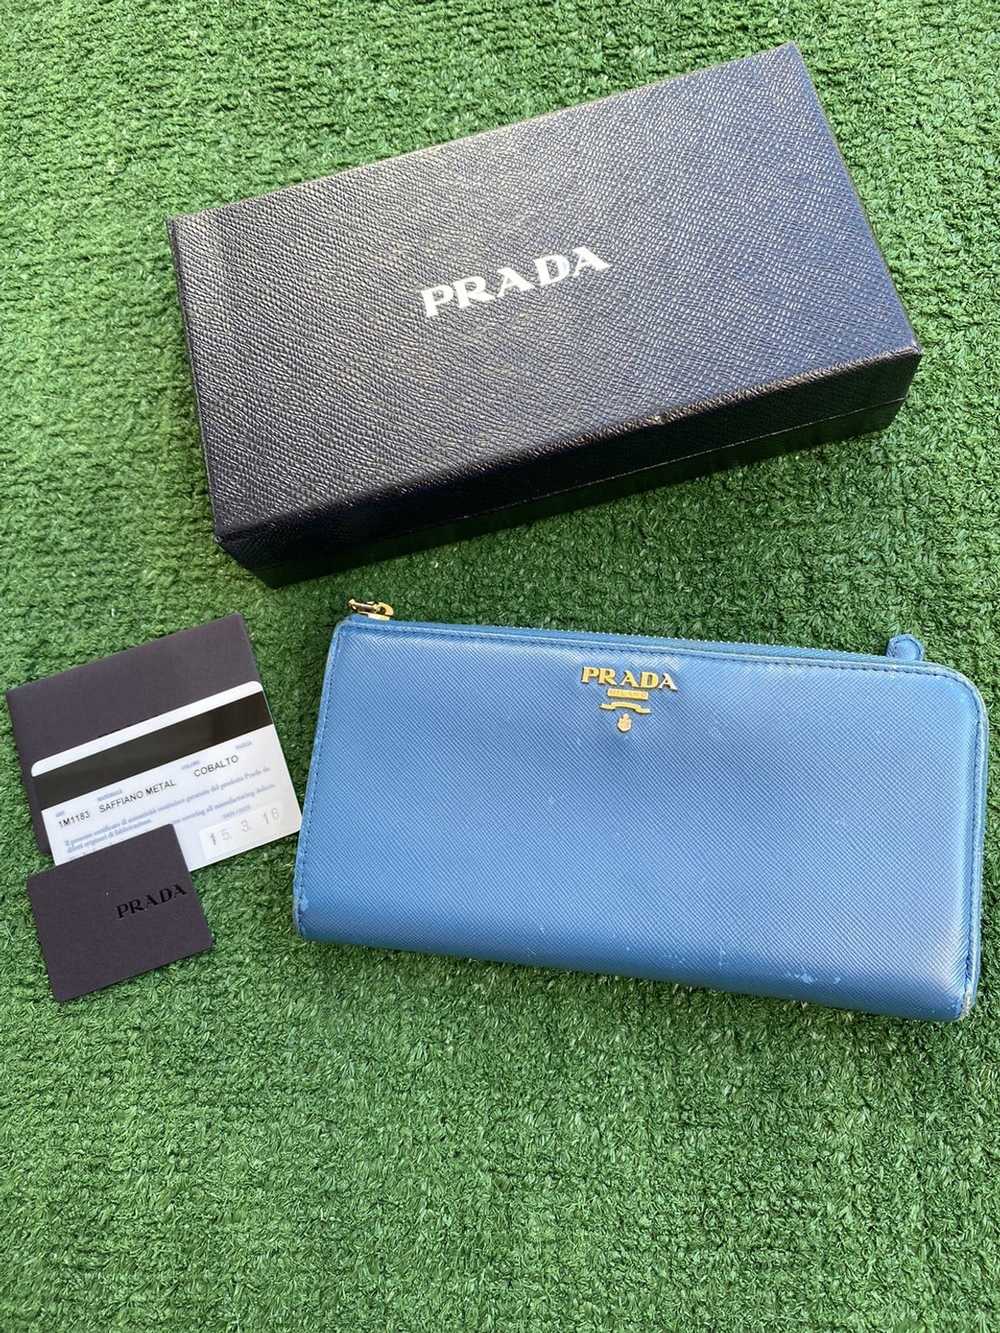 Prada 2015 Saffiano Metal Cobalto zippy wallet - image 1